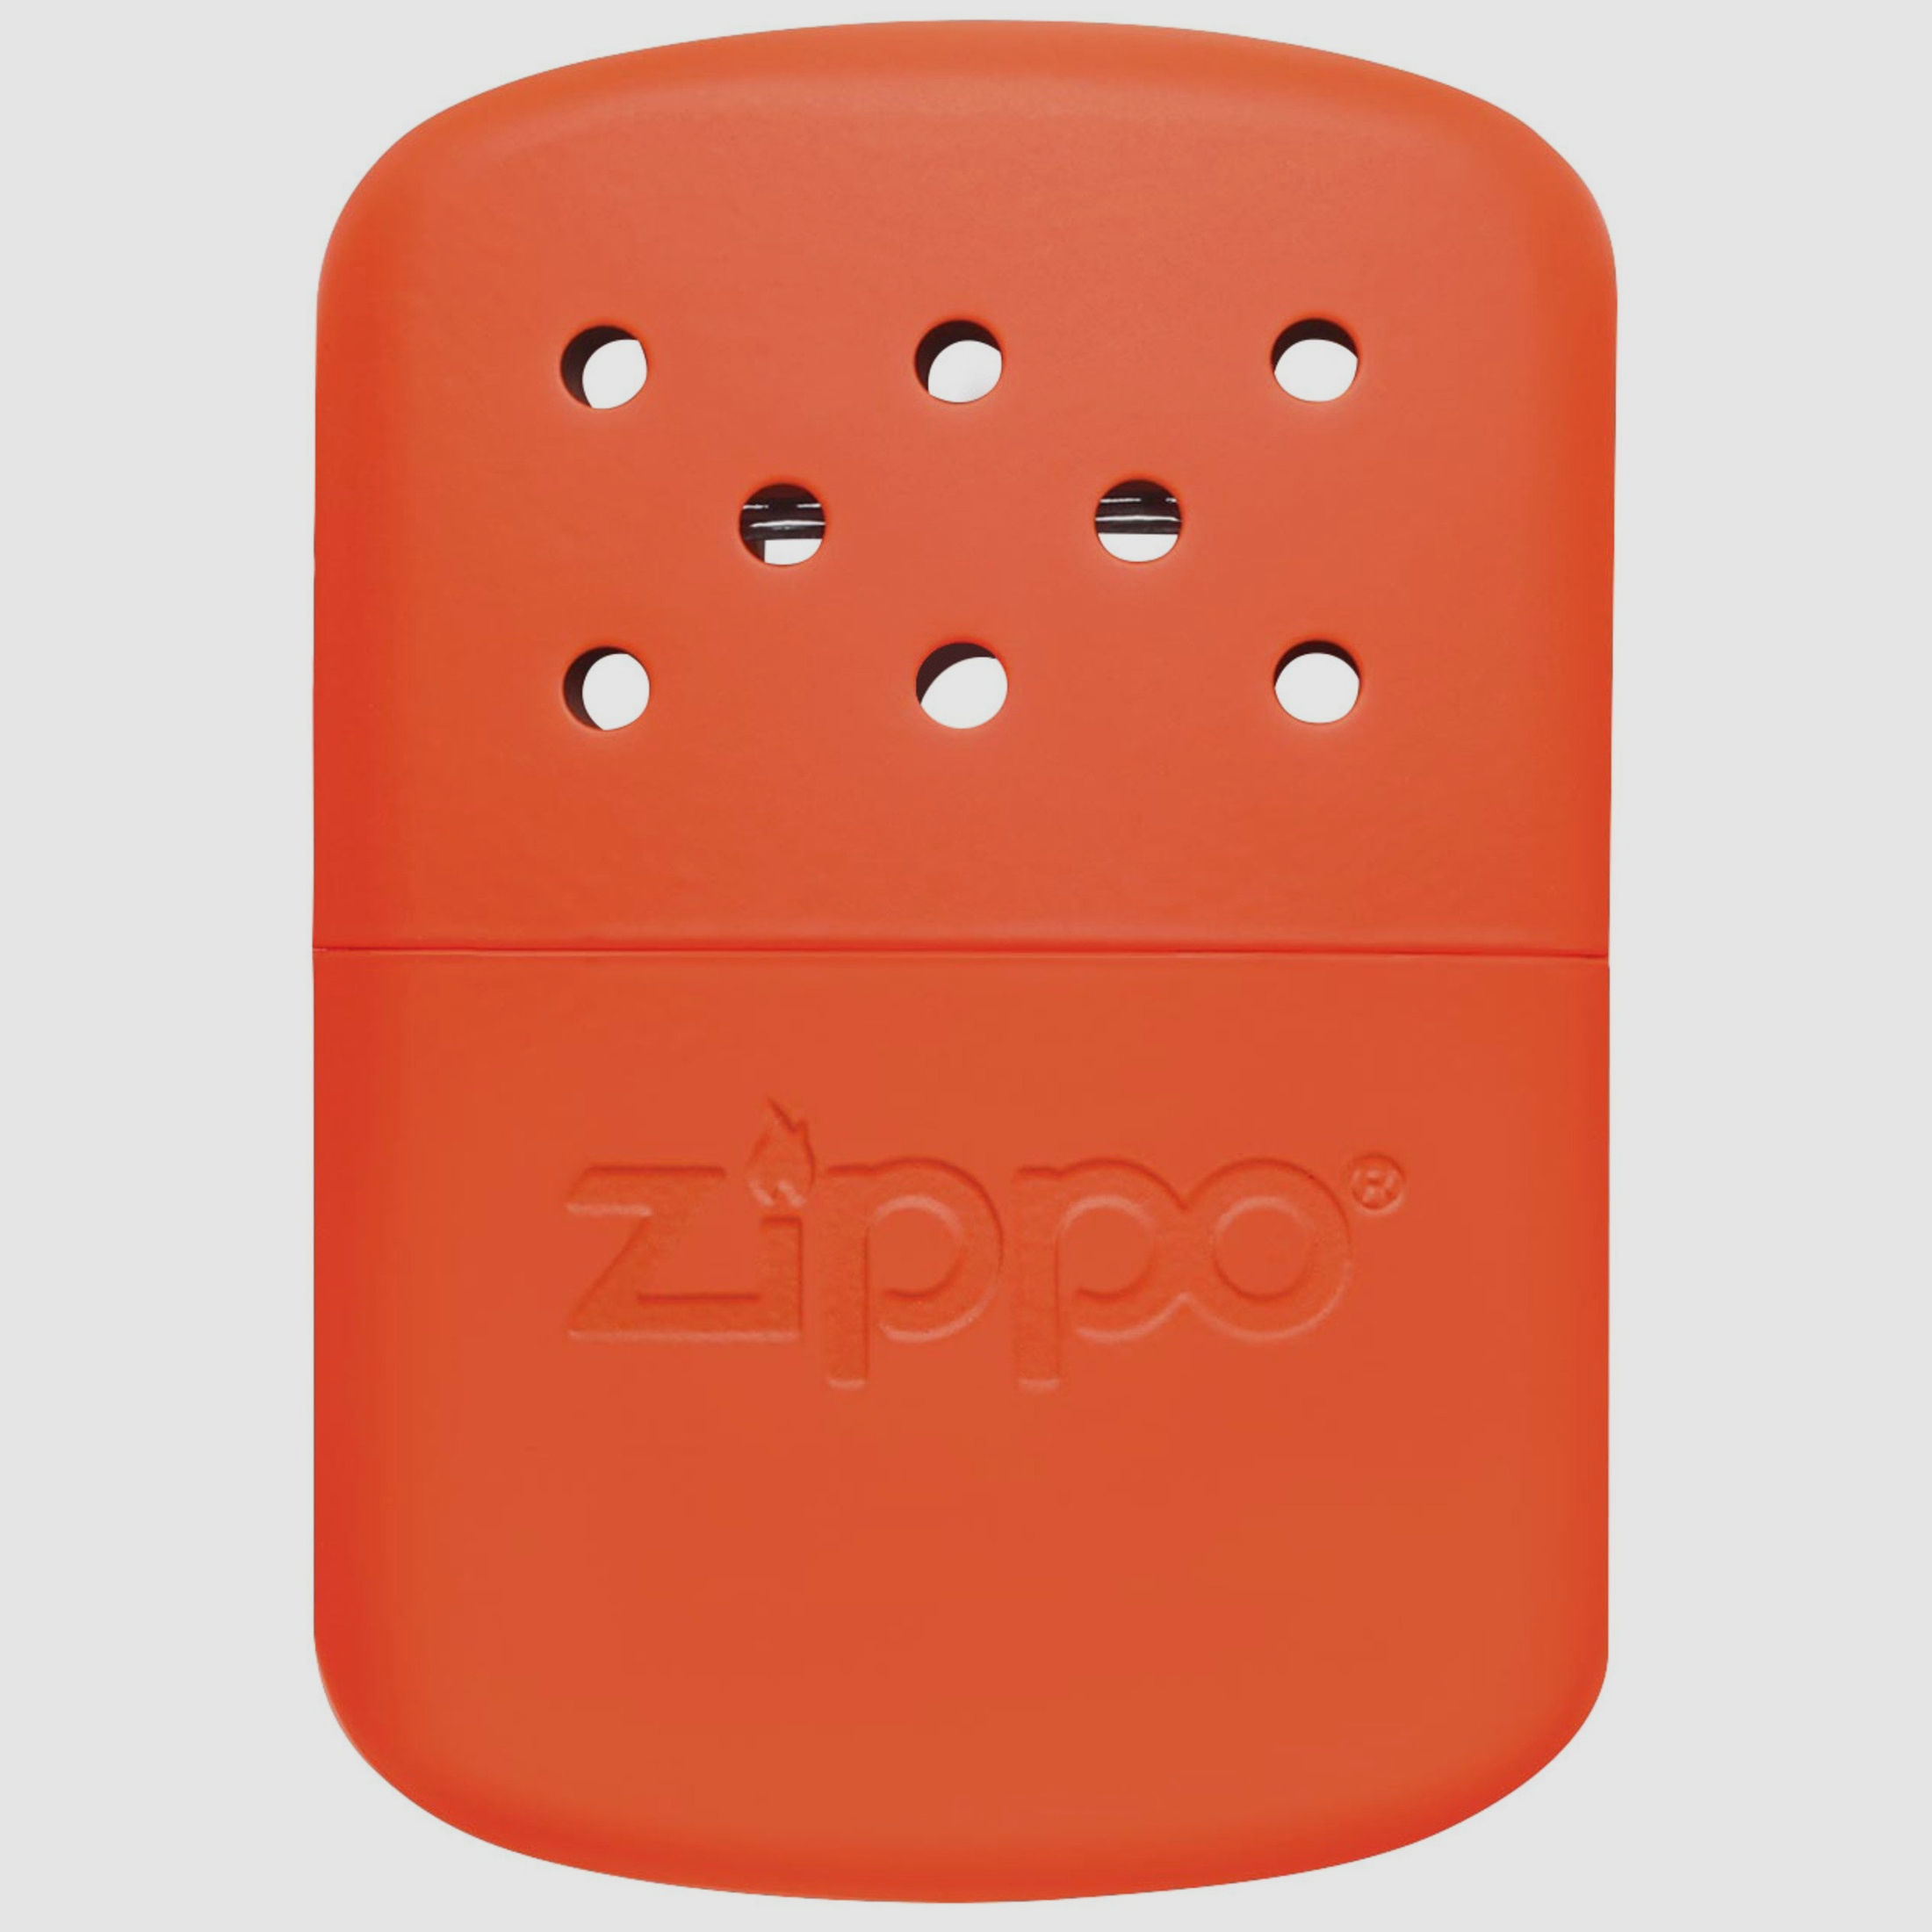 Zippo Handwärmer 12 G HW